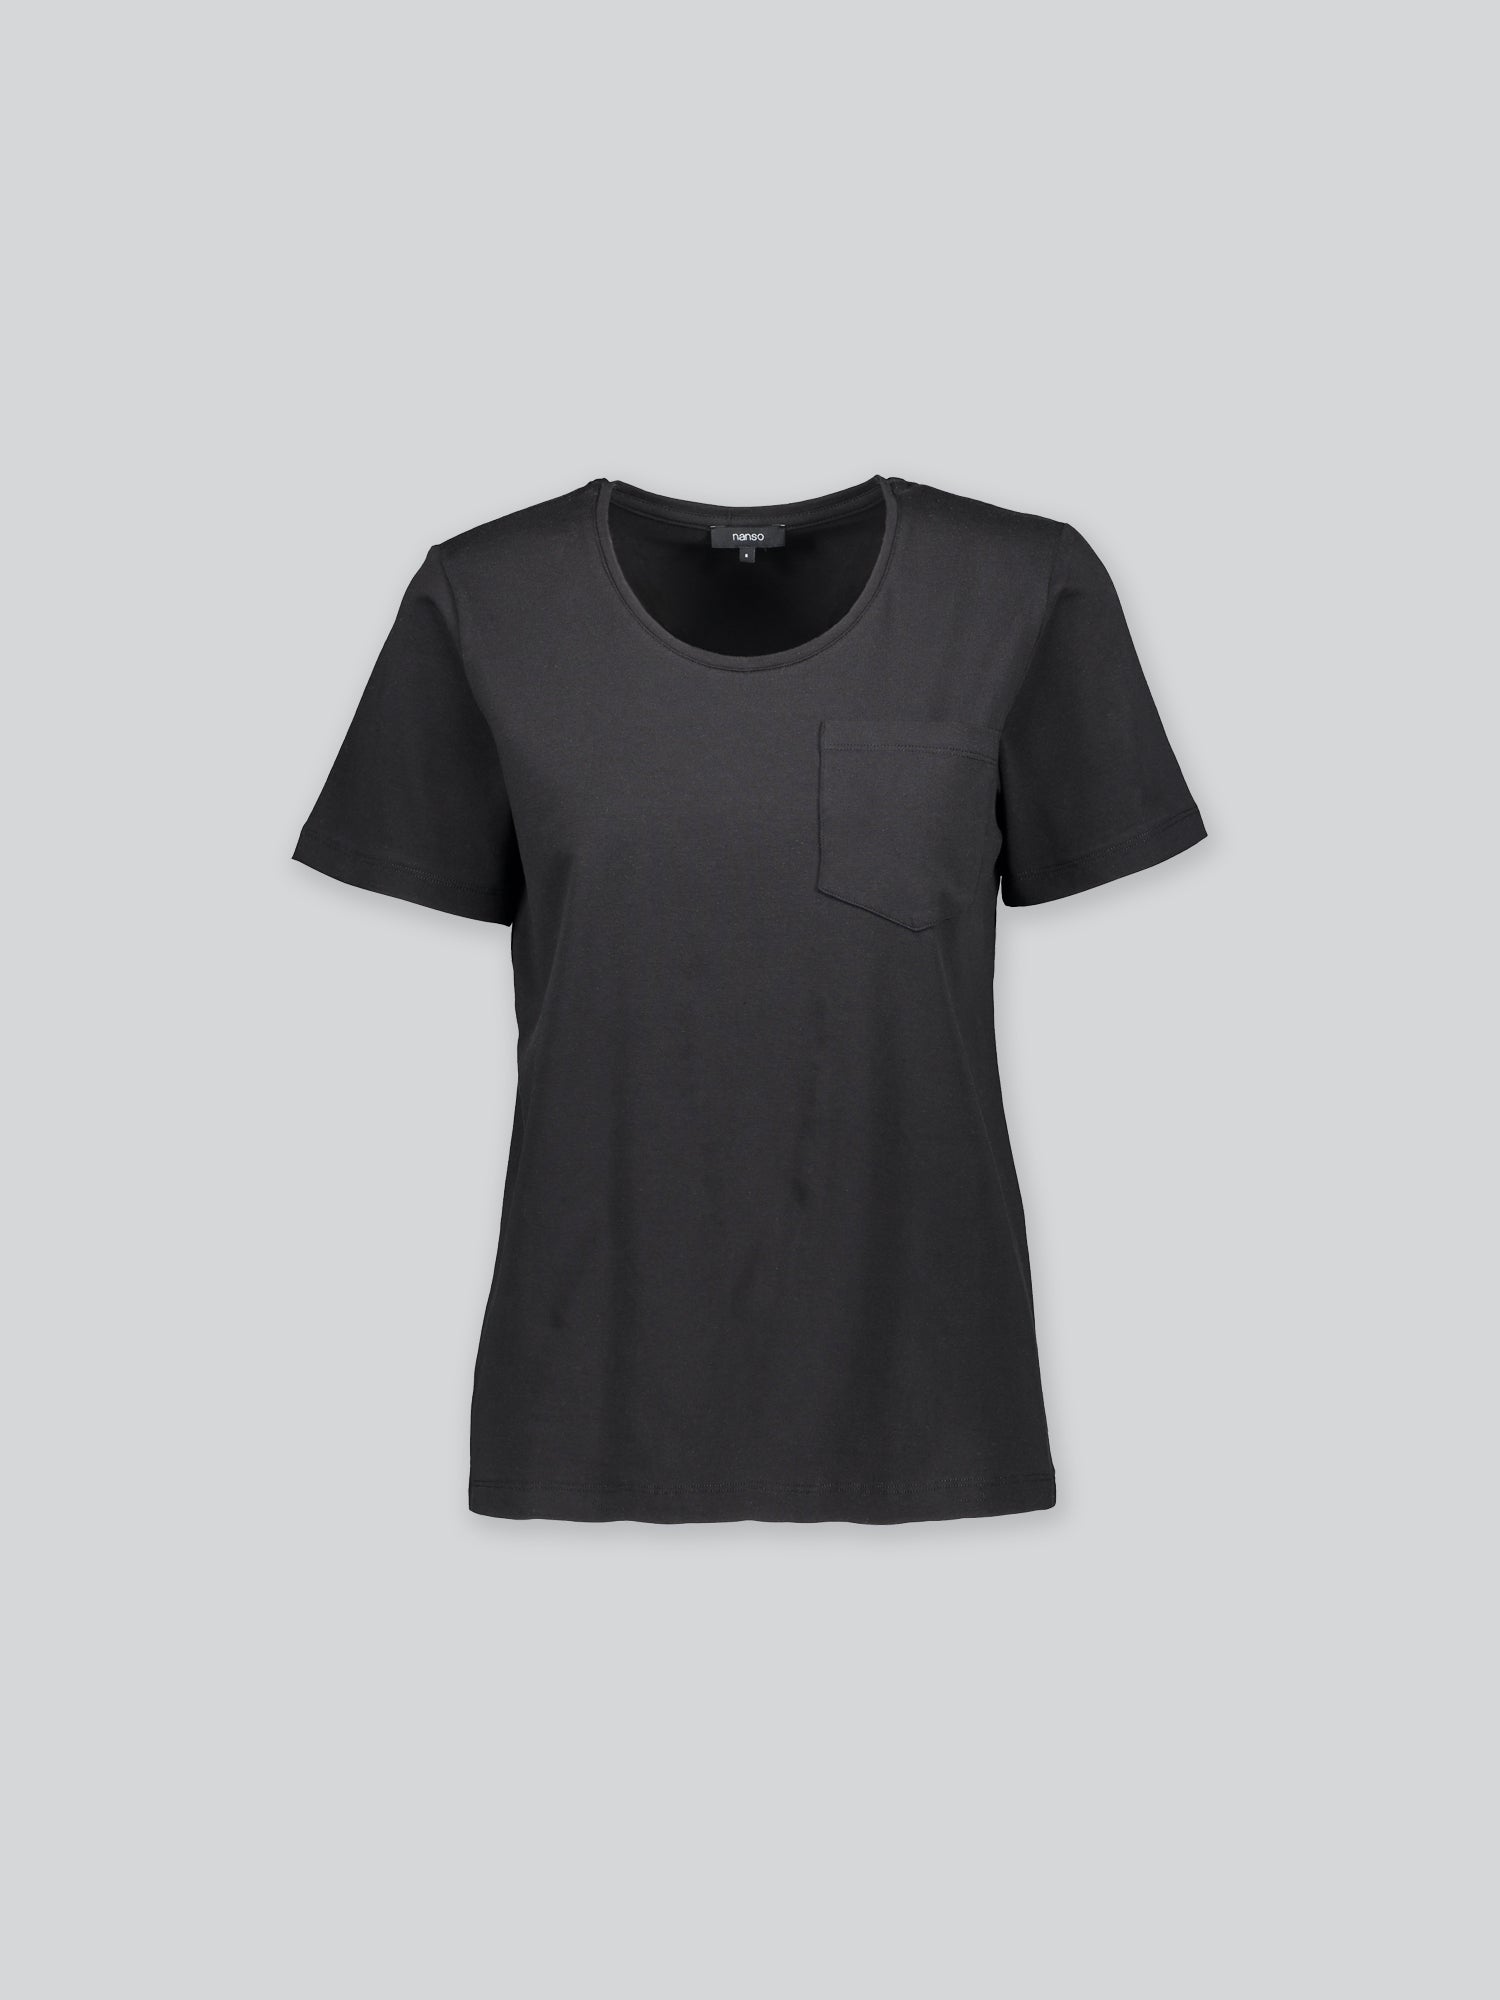 Naisten klassinen, musta Tasku t-paita pyöreällä pääntiellä.